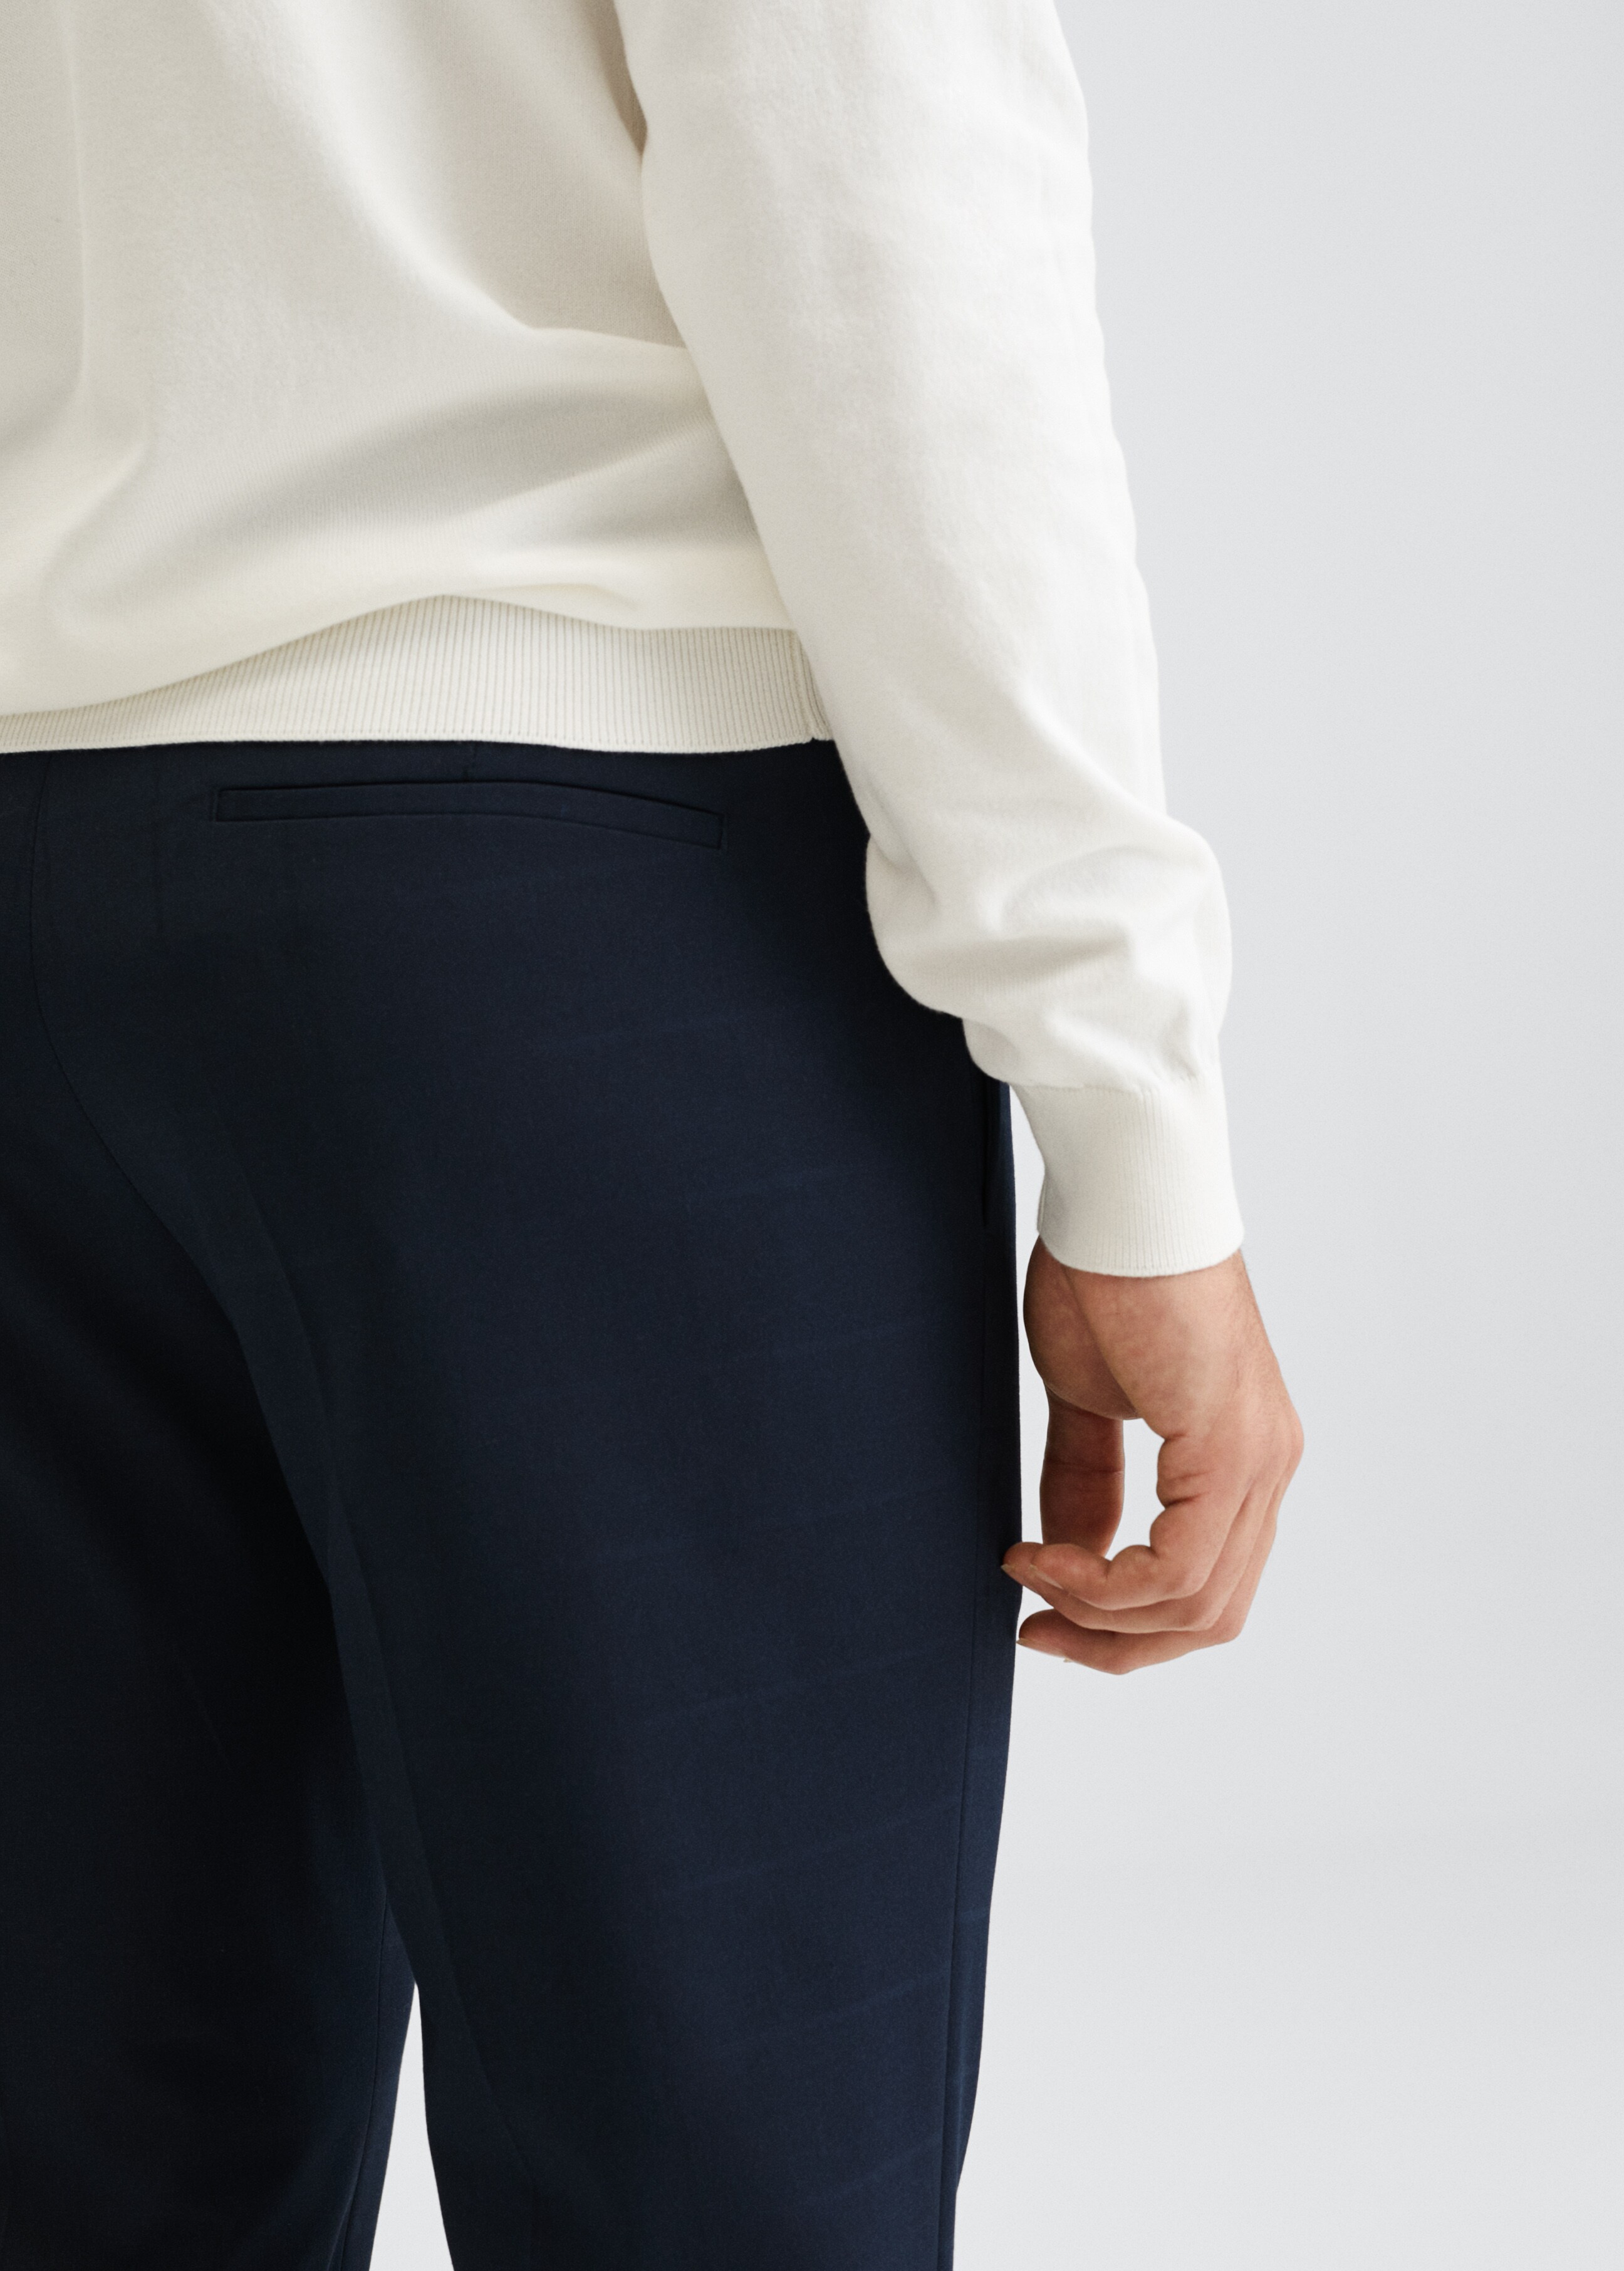 Pantalons vestit súper slim fit quadres - Detall de l'article 3